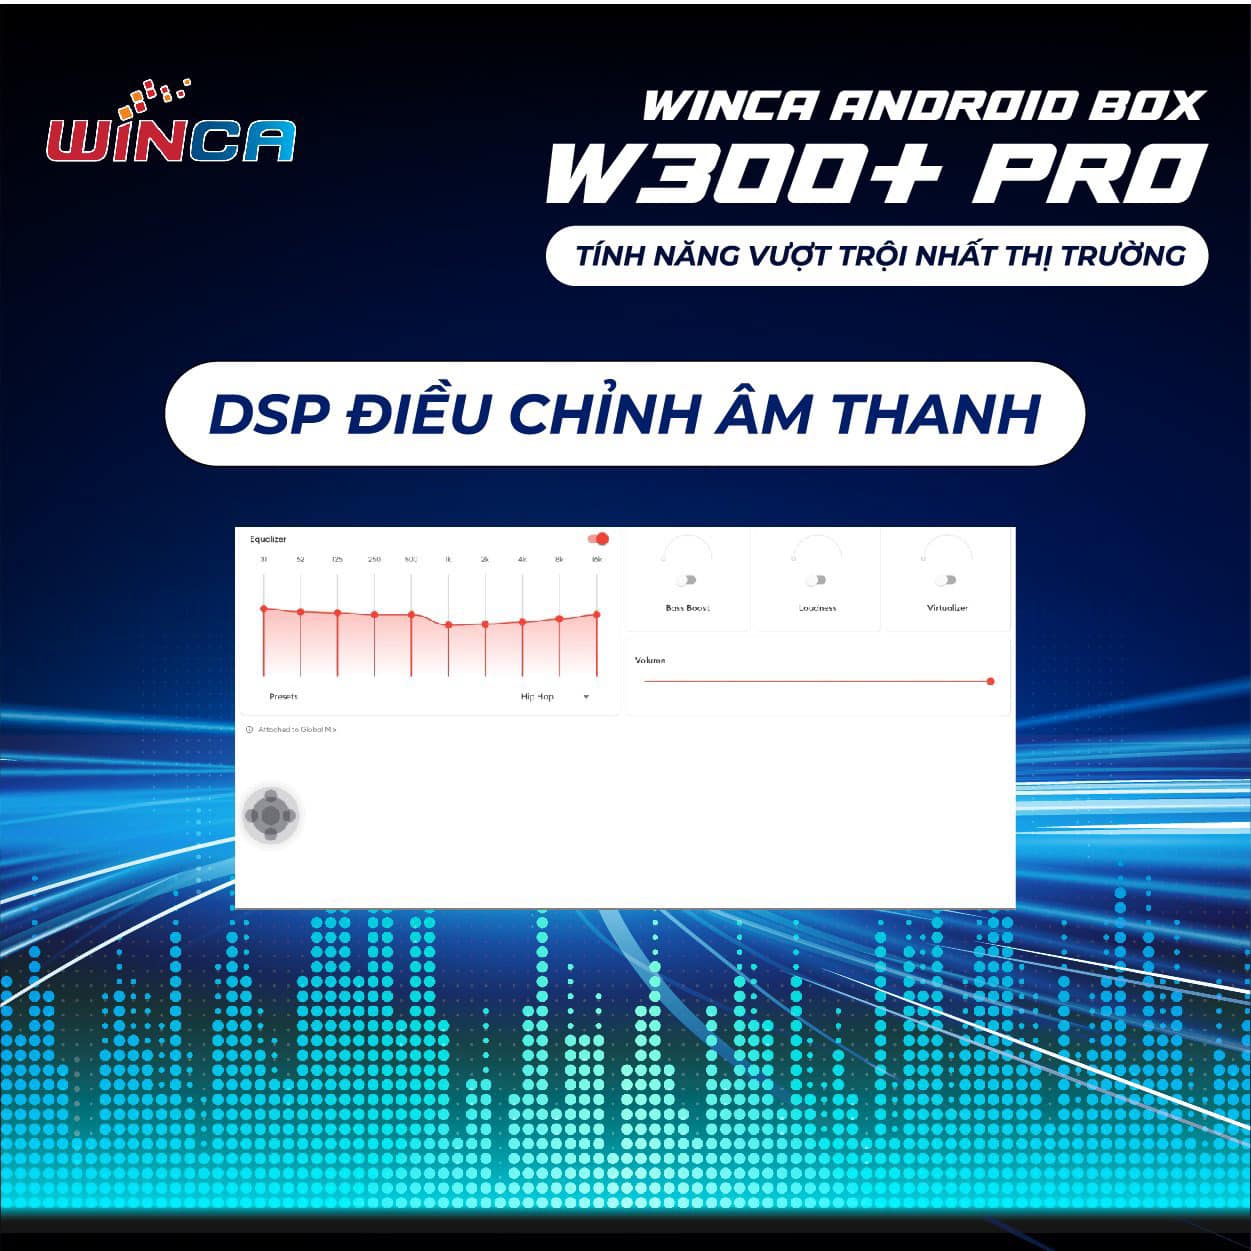 Winca Android Box W300+ Pro được tích hợp DSP điều chỉnh âm thanh